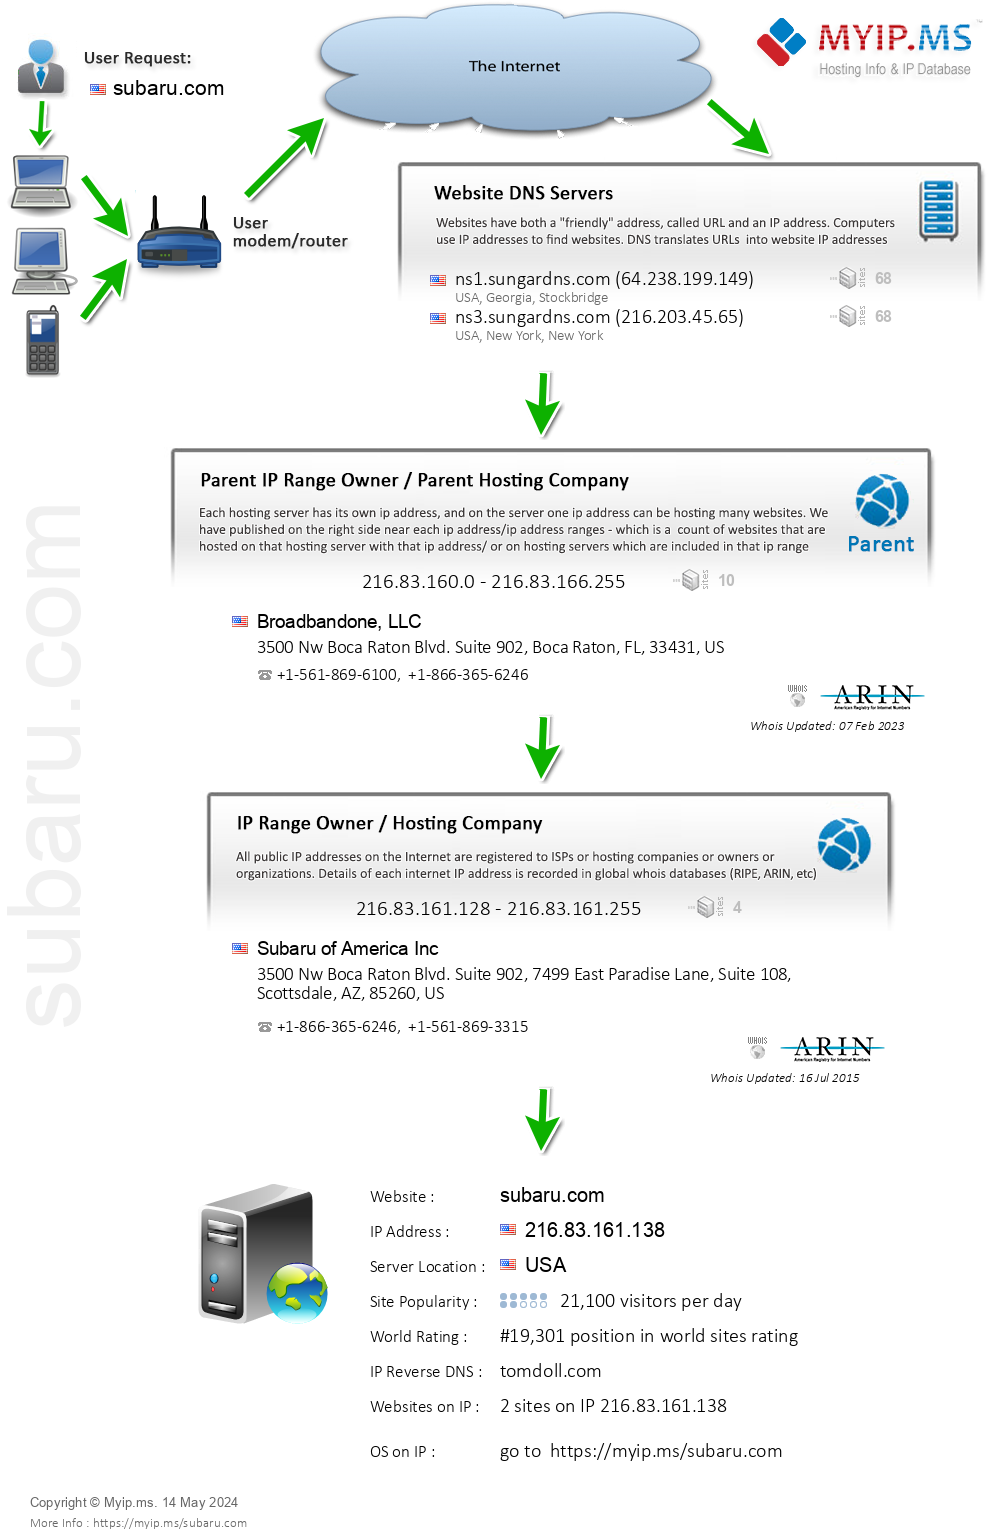 Subaru.com - Website Hosting Visual IP Diagram